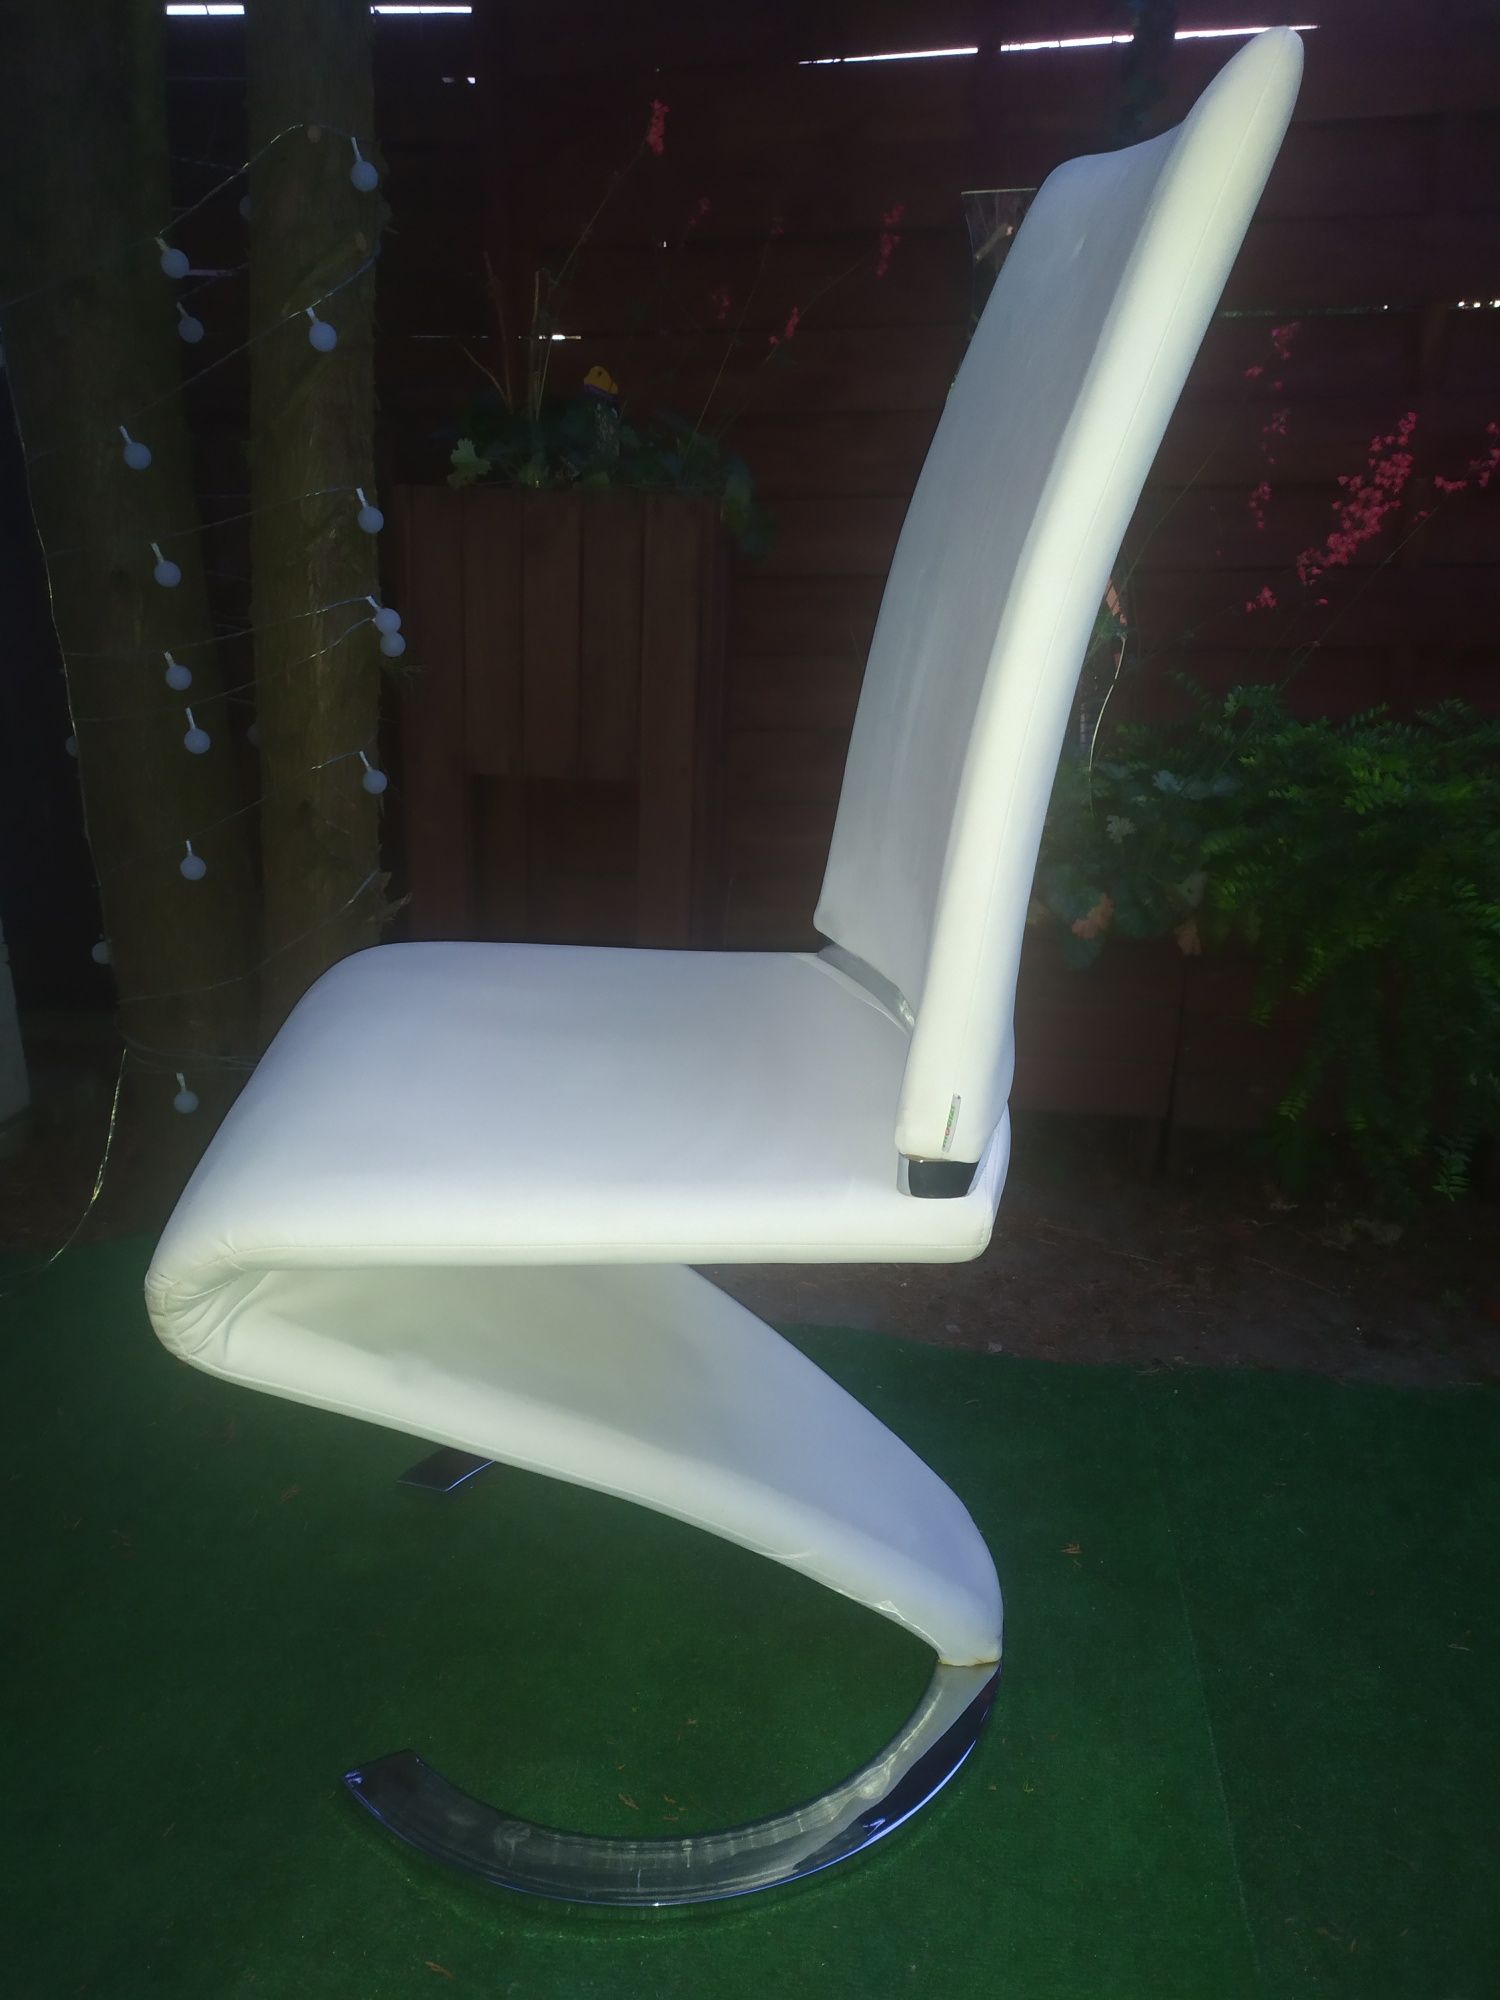 Nowoczesne białe krzesło ekoskóra do salonu, jadalni